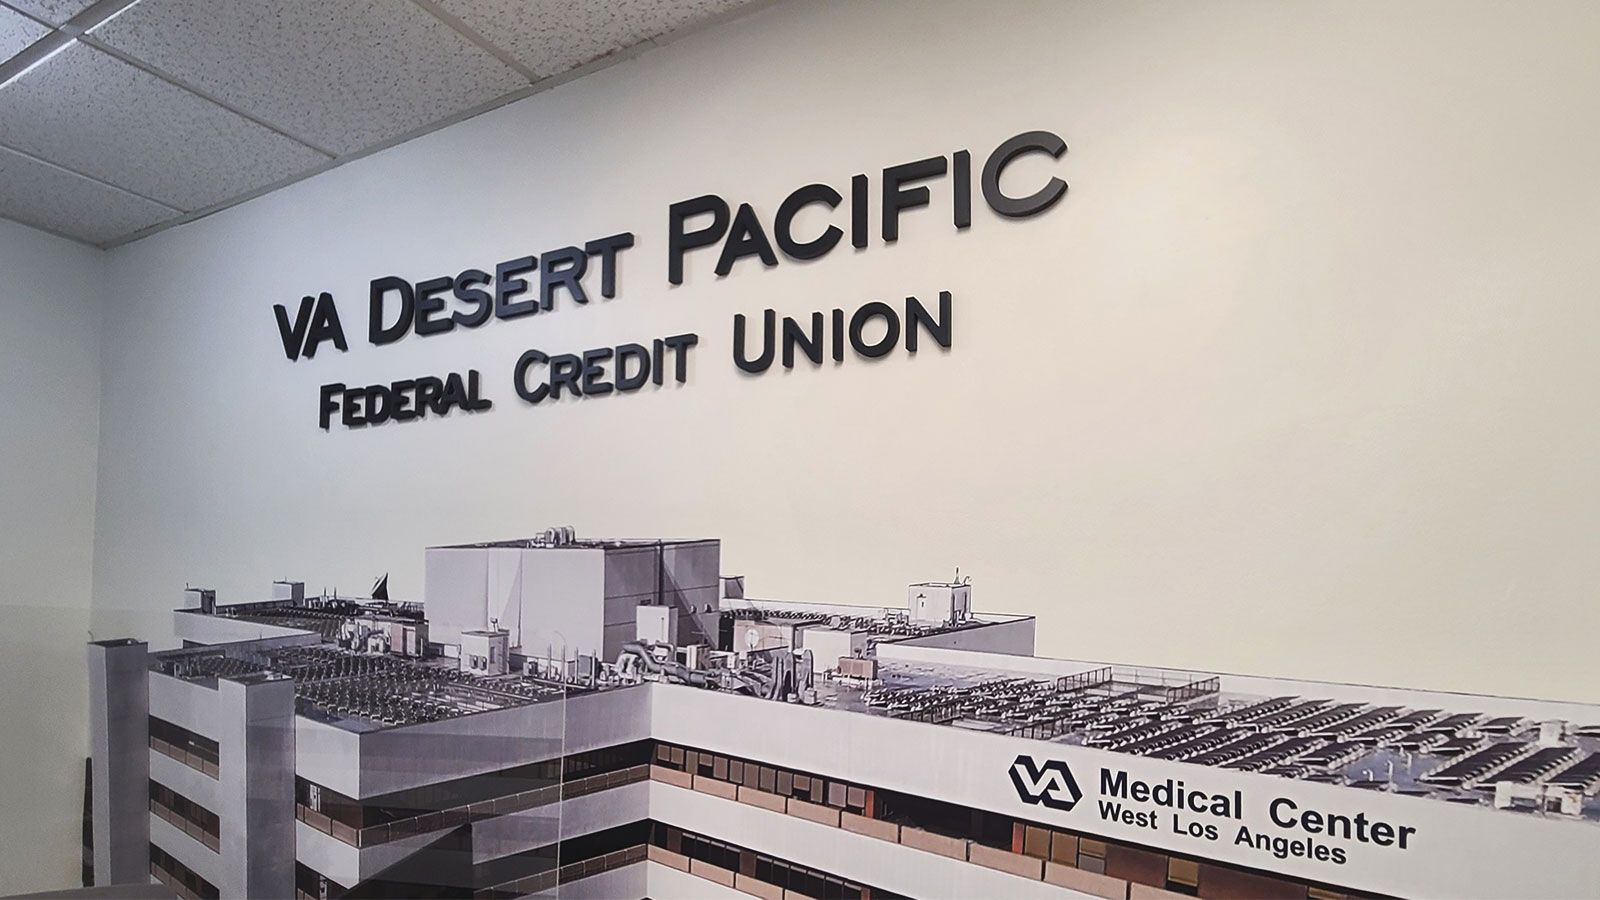 VA Desert Pacific 3D letters